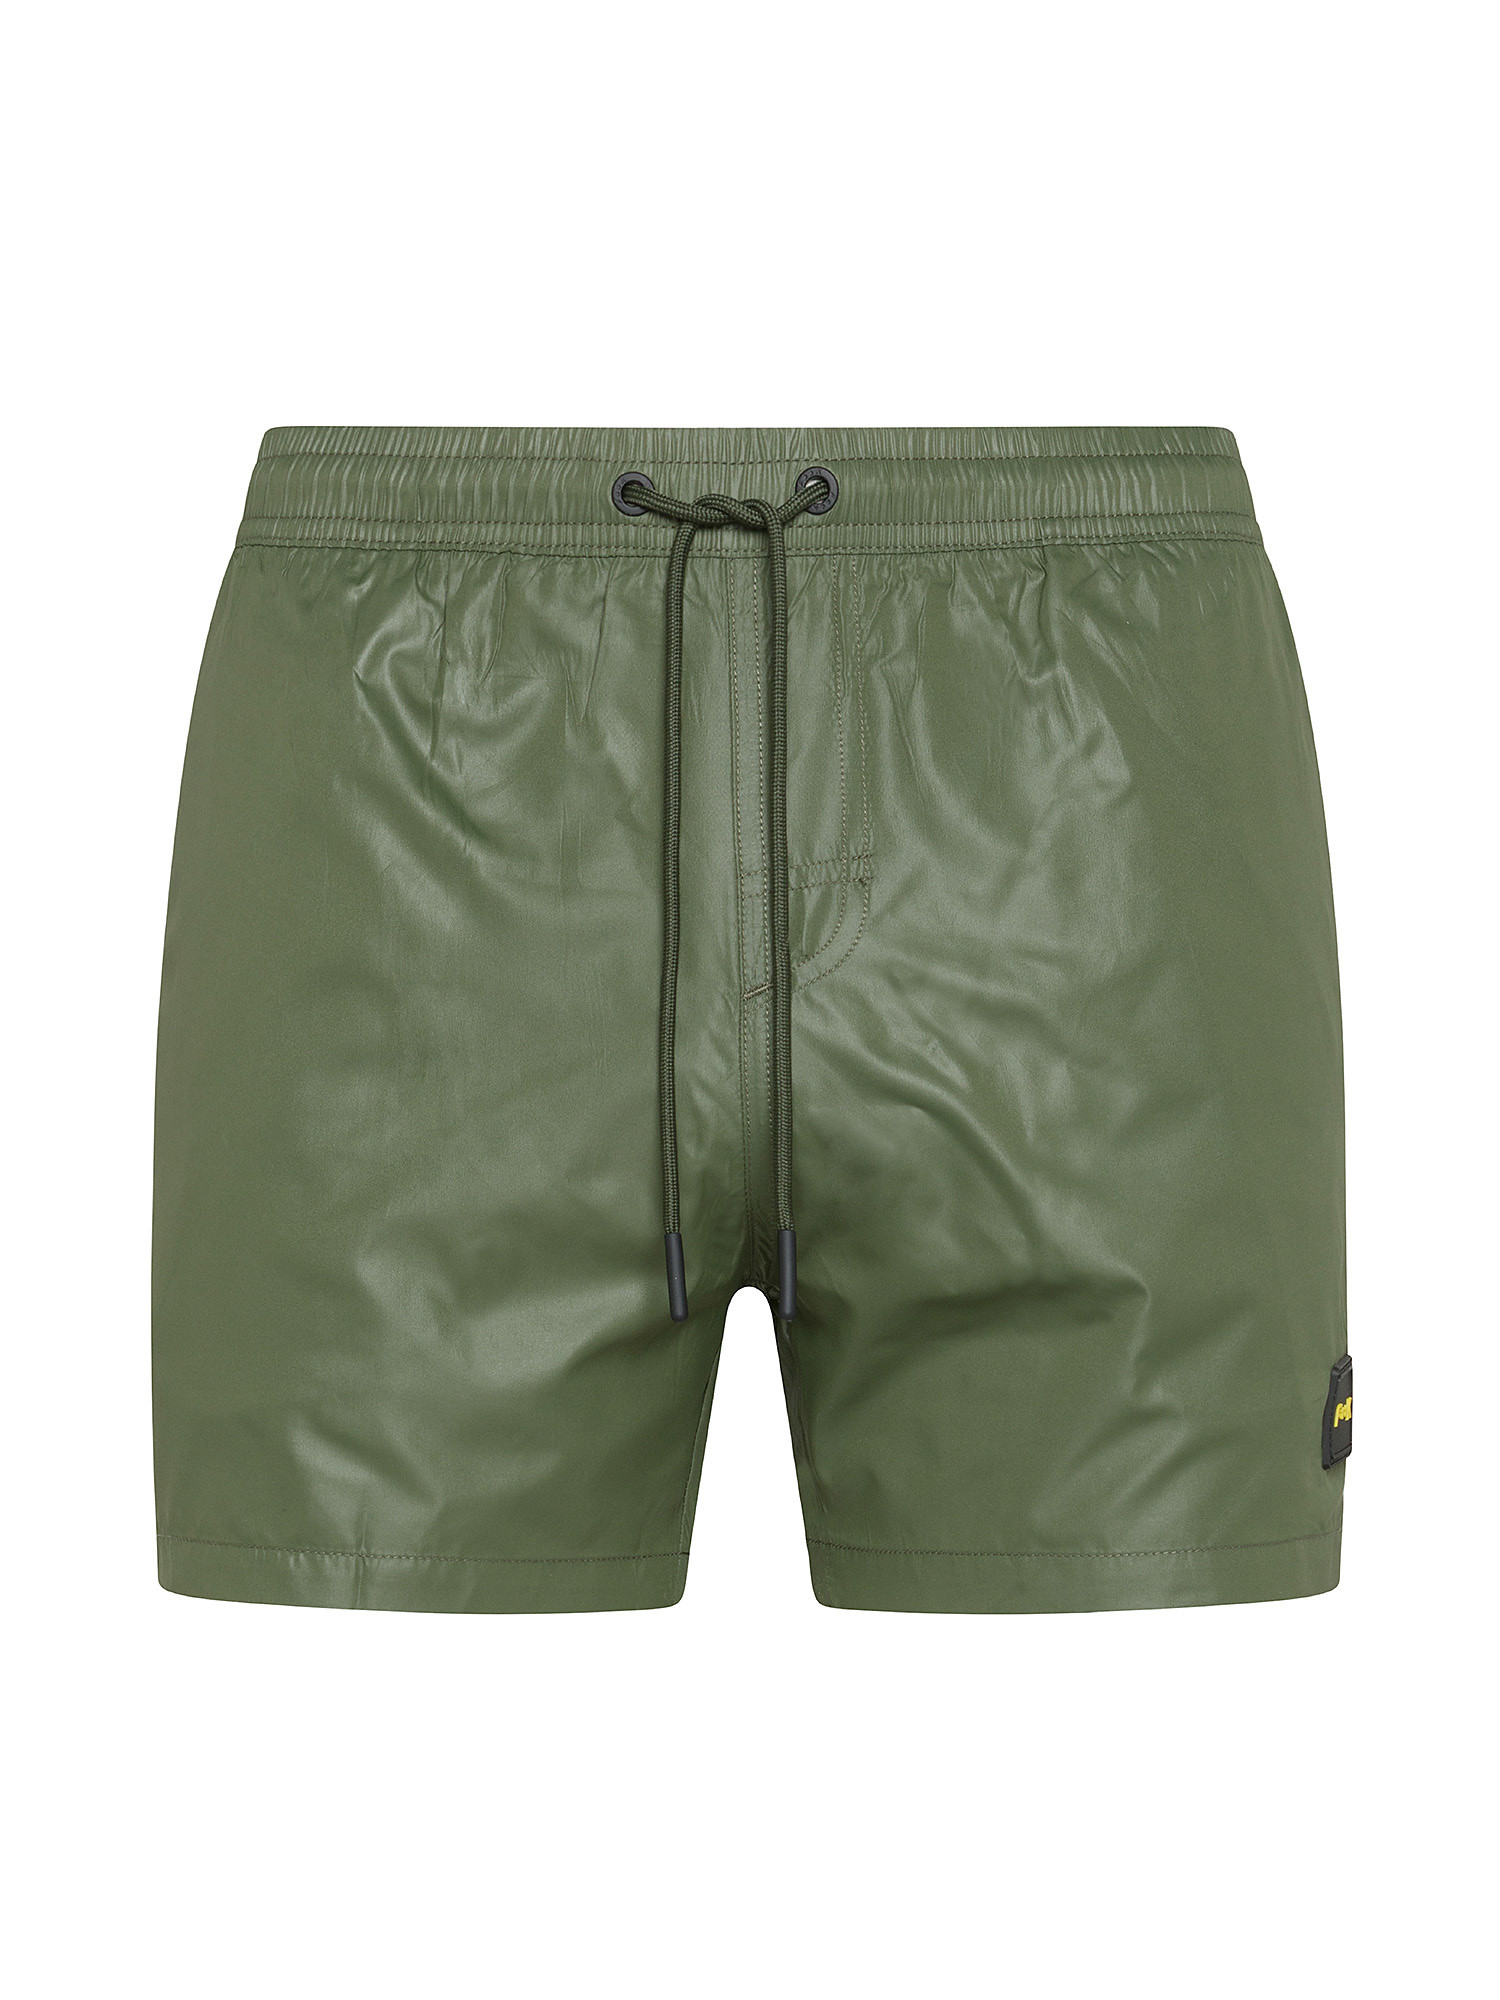 F**K - Shiny swim shorts, Dark Green, large image number 0